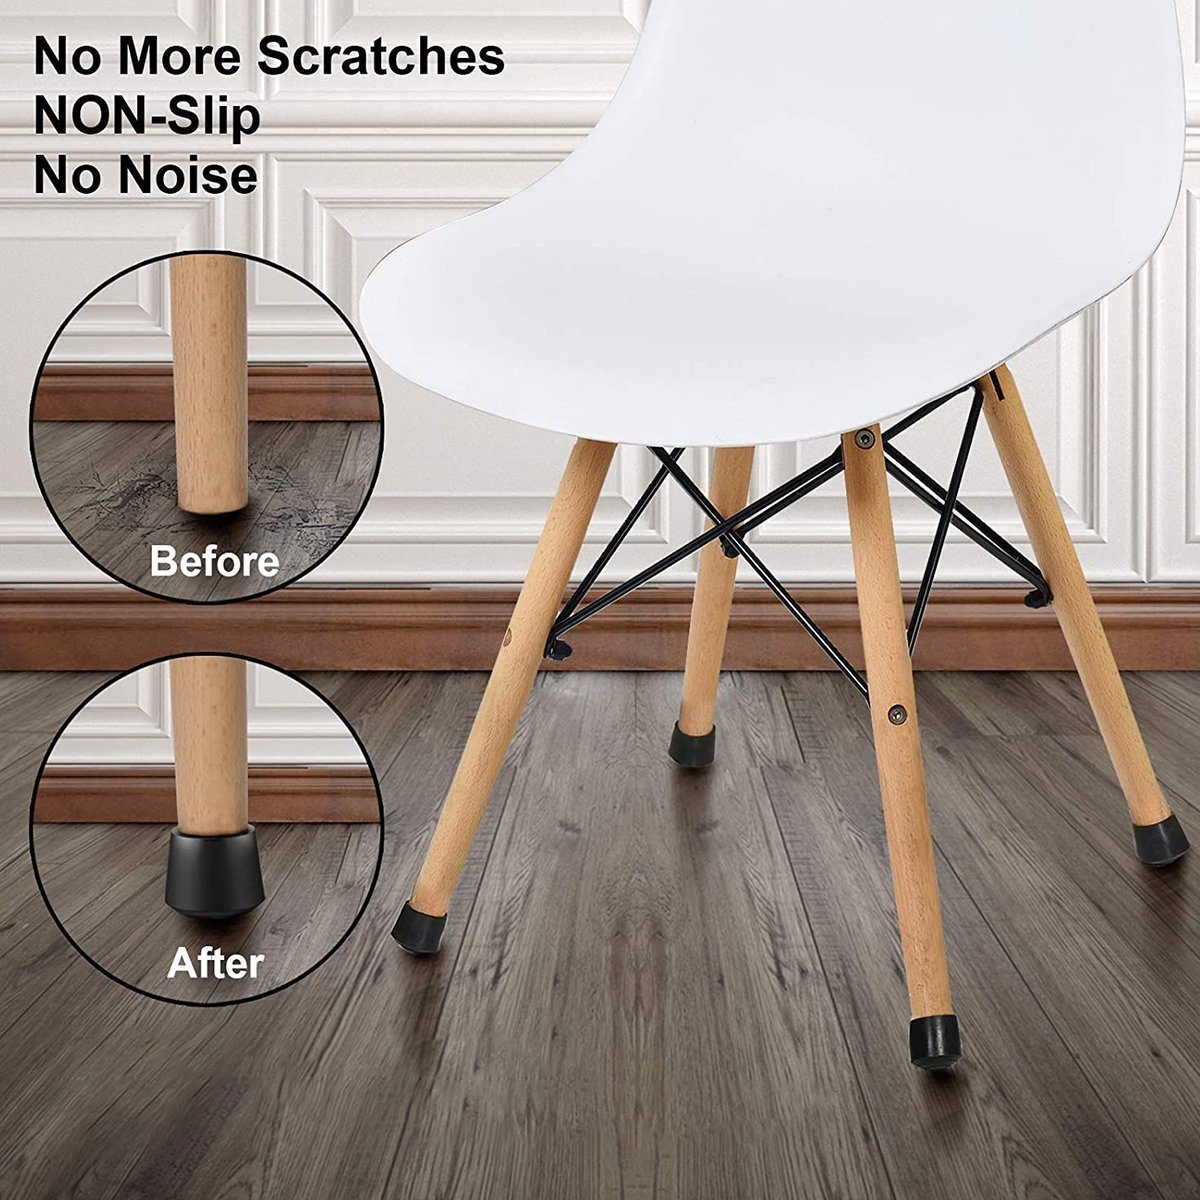 zu Füße Pads,Stuhlkappen, Flexibilität, nicht leicht Stuhlkappen Gummi Jormftte verformen Tischbein Starke